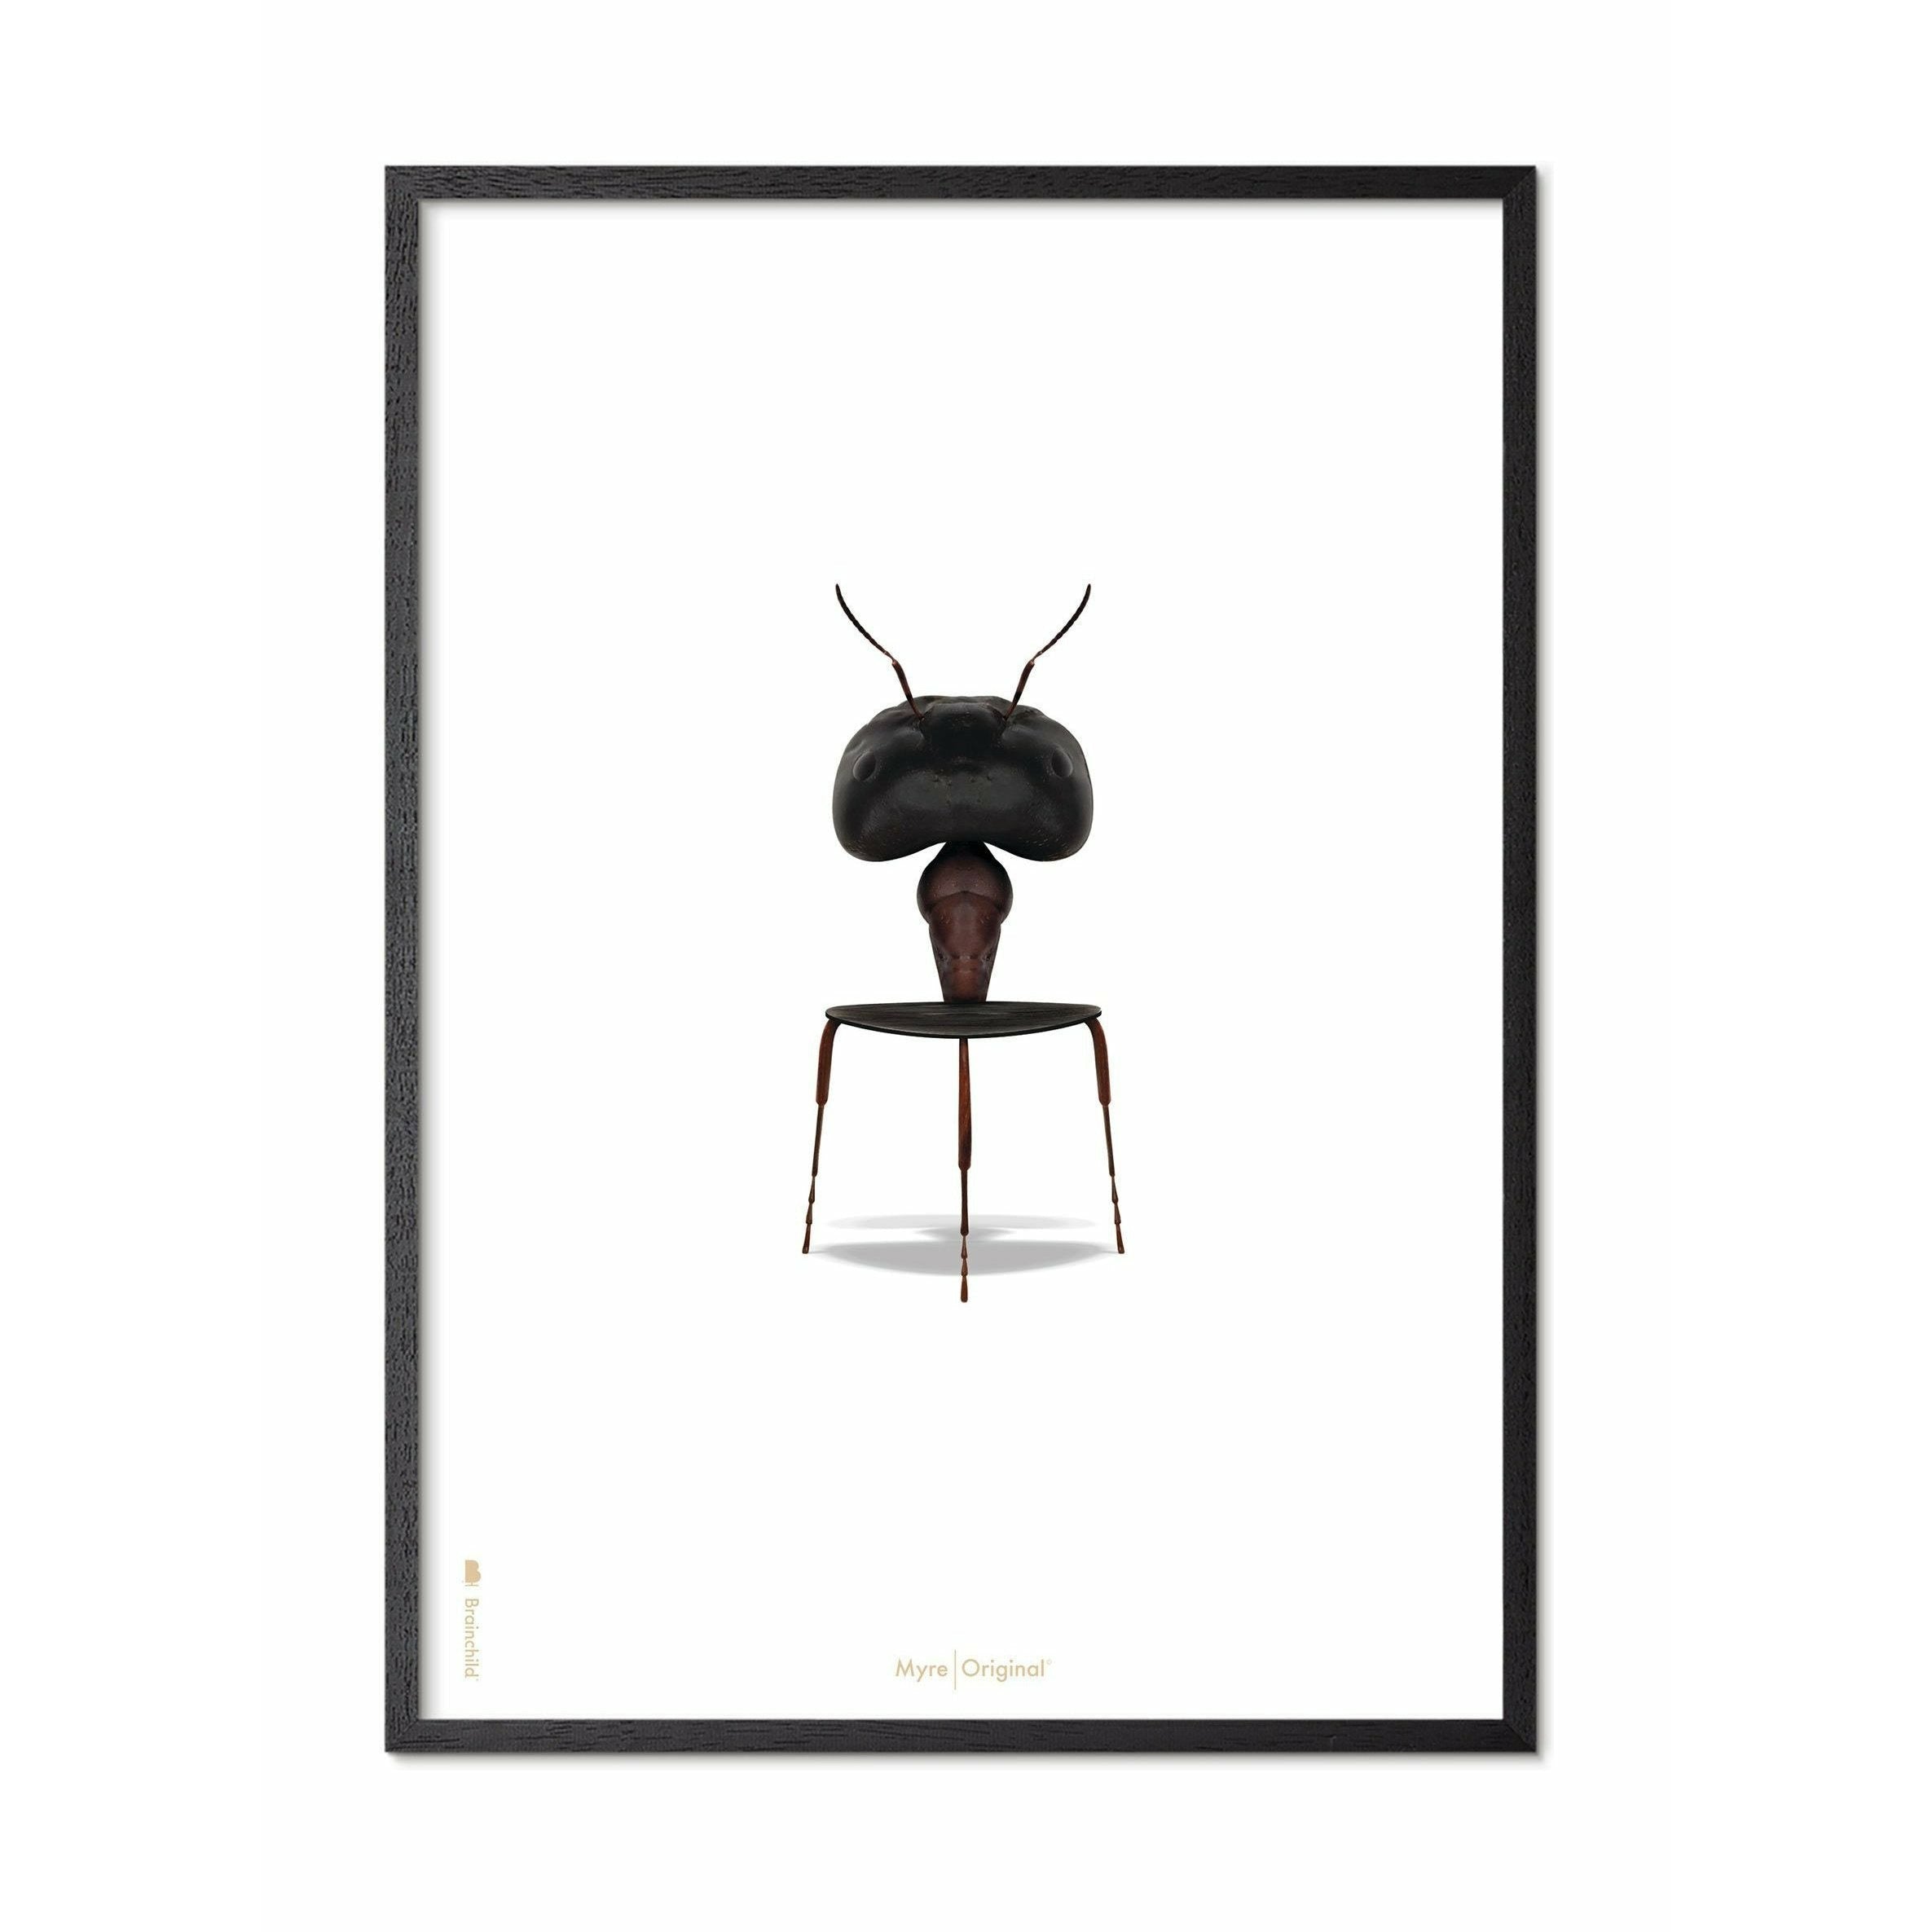 Póster clásico de hormigas de creación, marco en madera lacada negra de 70x100 cm, fondo blanco